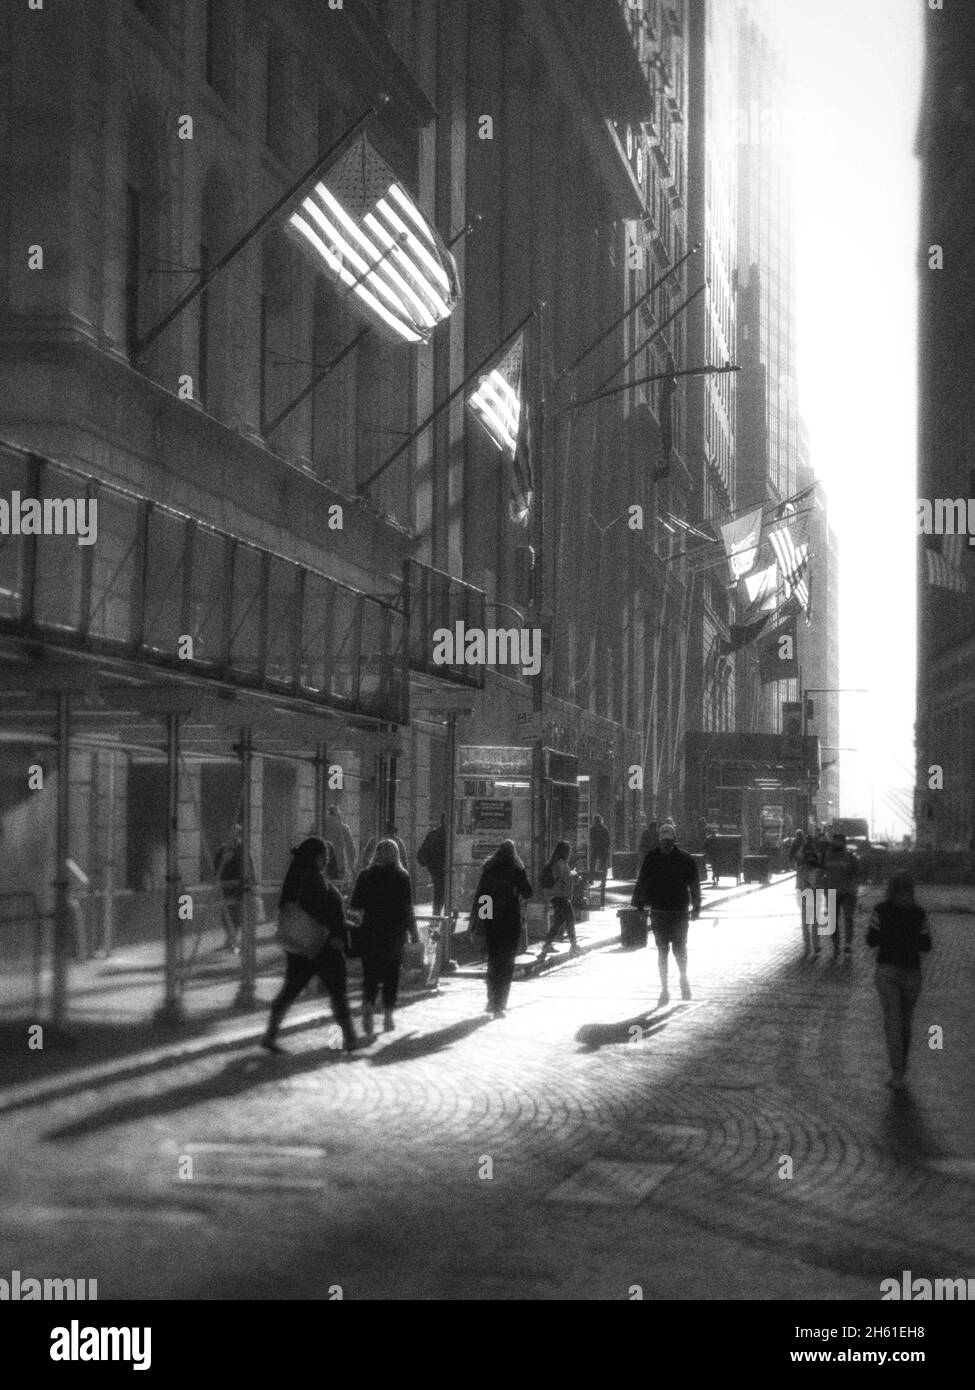 Silouette von Menschen in einer Kopfsteinpflasterstraße im unteren Manahattan in der Nähe der New Yorker Börse. Hinterleuchtete amerikanische Flaggen auf den Gebäuden Stockfoto